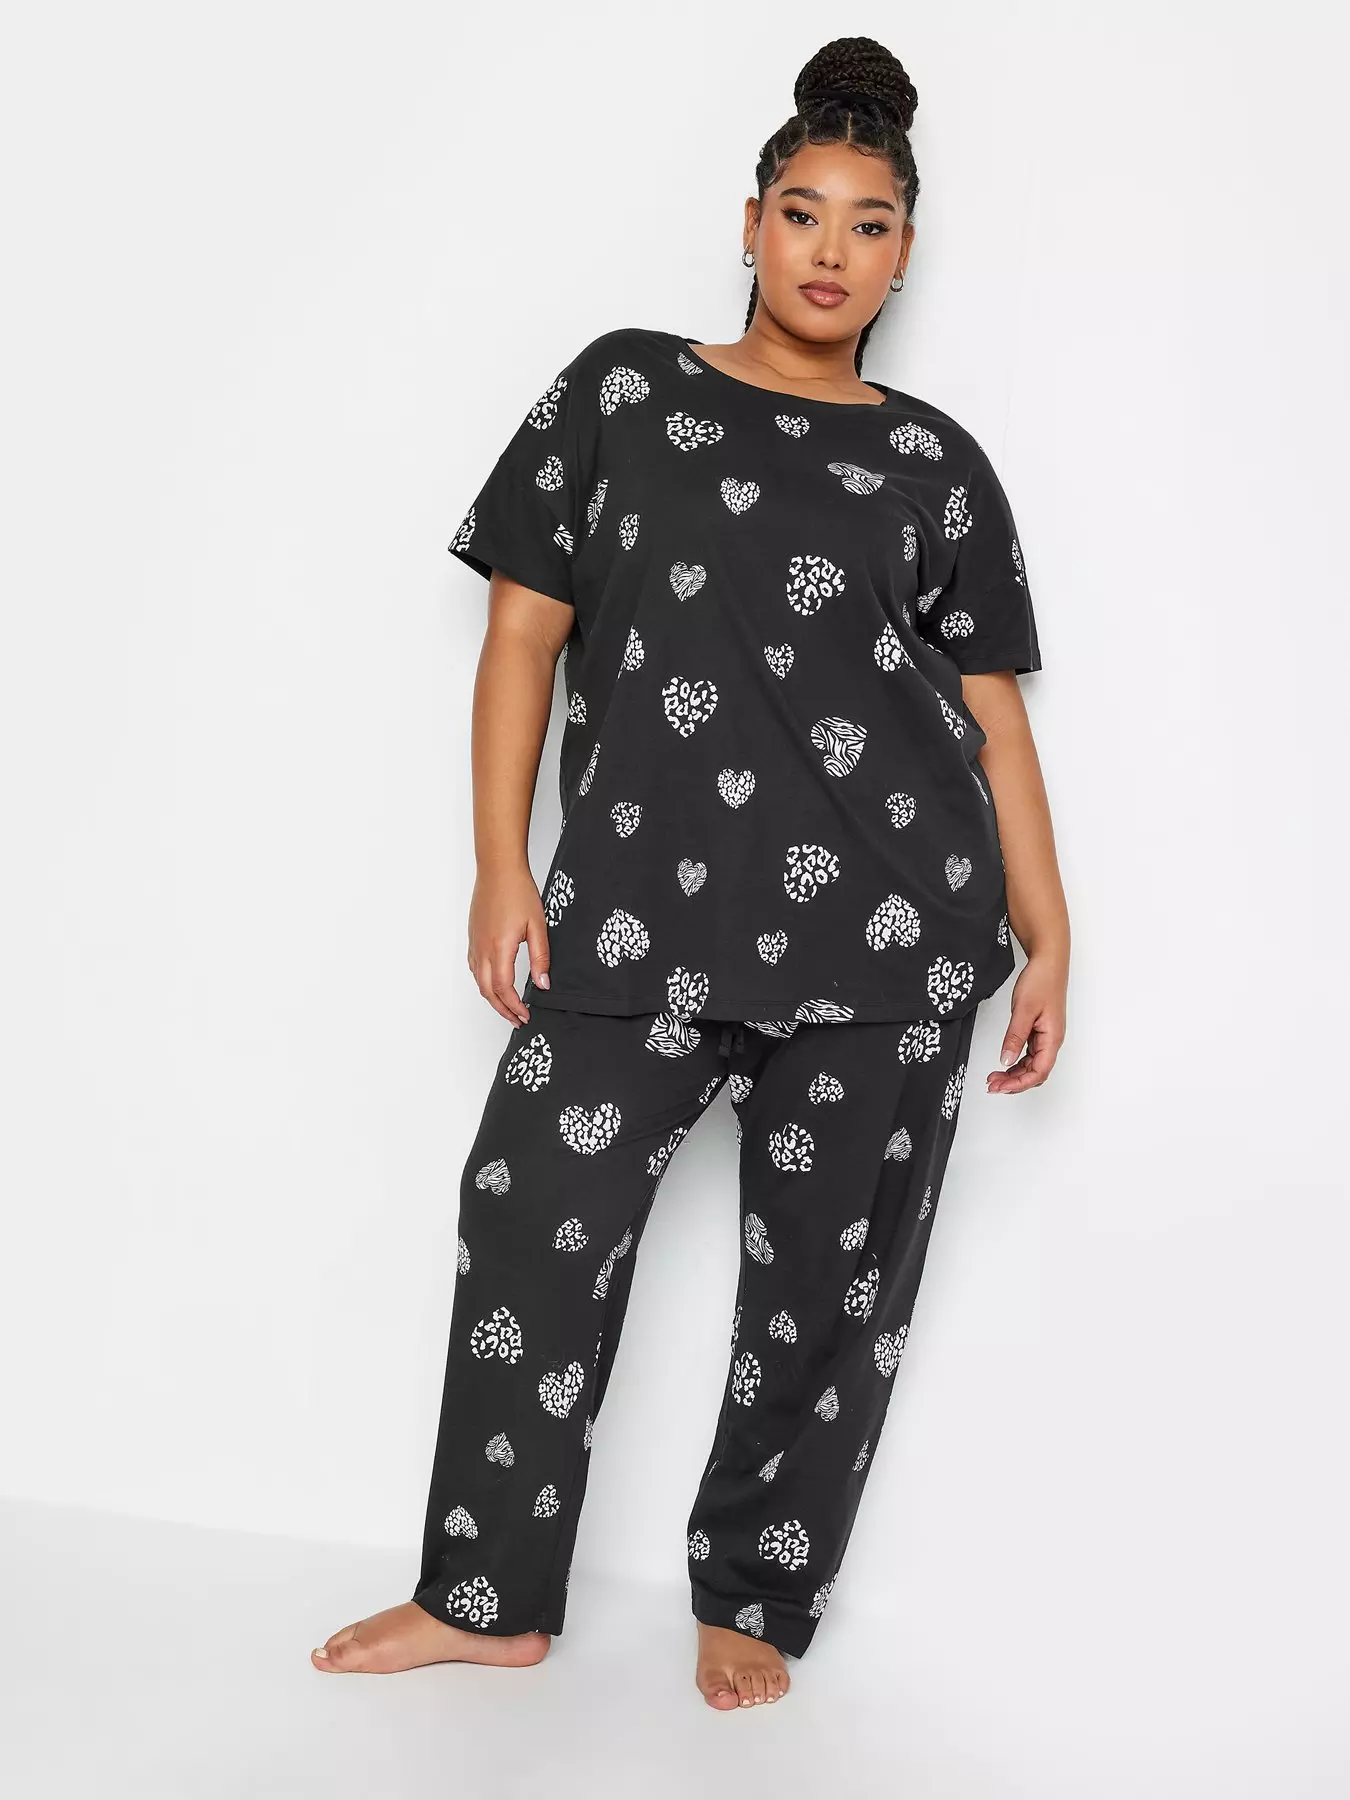 Women's Black Pyjamas, Black PJs Sets